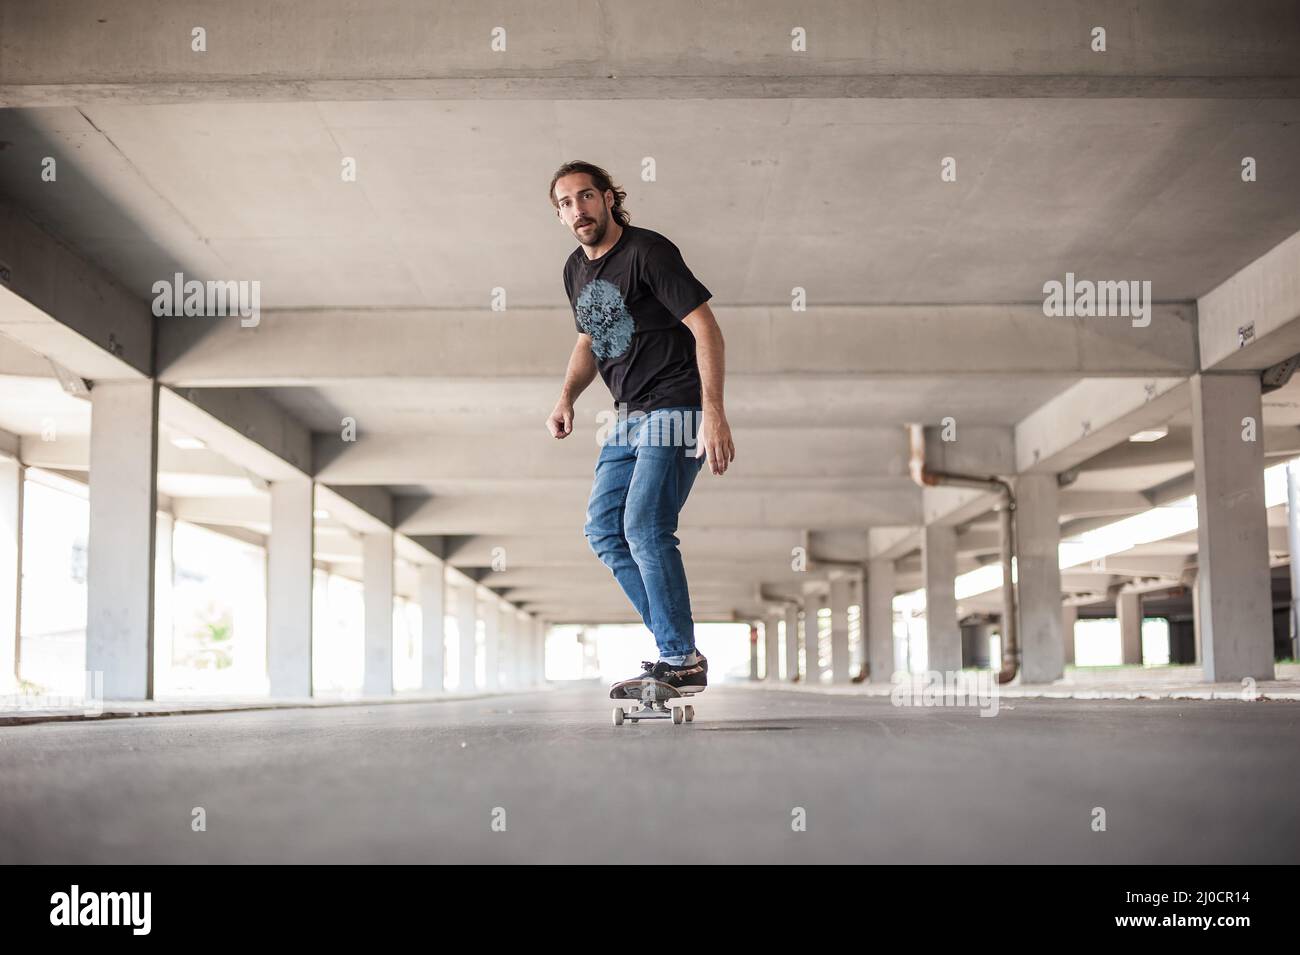 Professionelle Skateboarderfahrten skaten in einer unterirdischen Passage. Free Ride Street Skateboarding Stockfoto